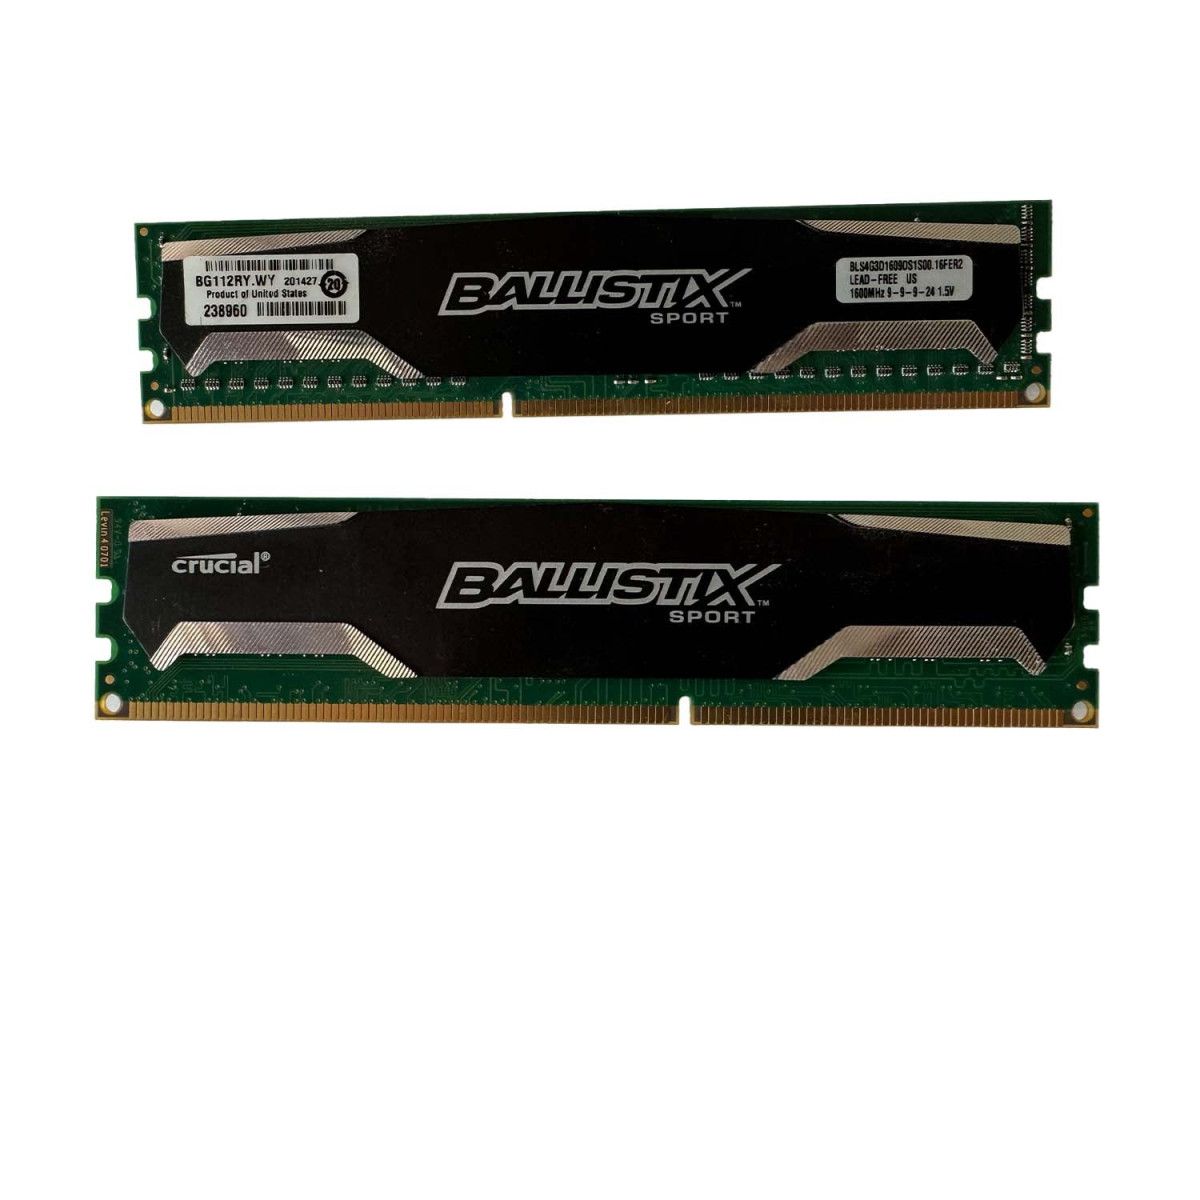 2x 4GB DDR3-1600 gaminggeheugen - BLS4G3D1609DS1S00 1 - Memstar